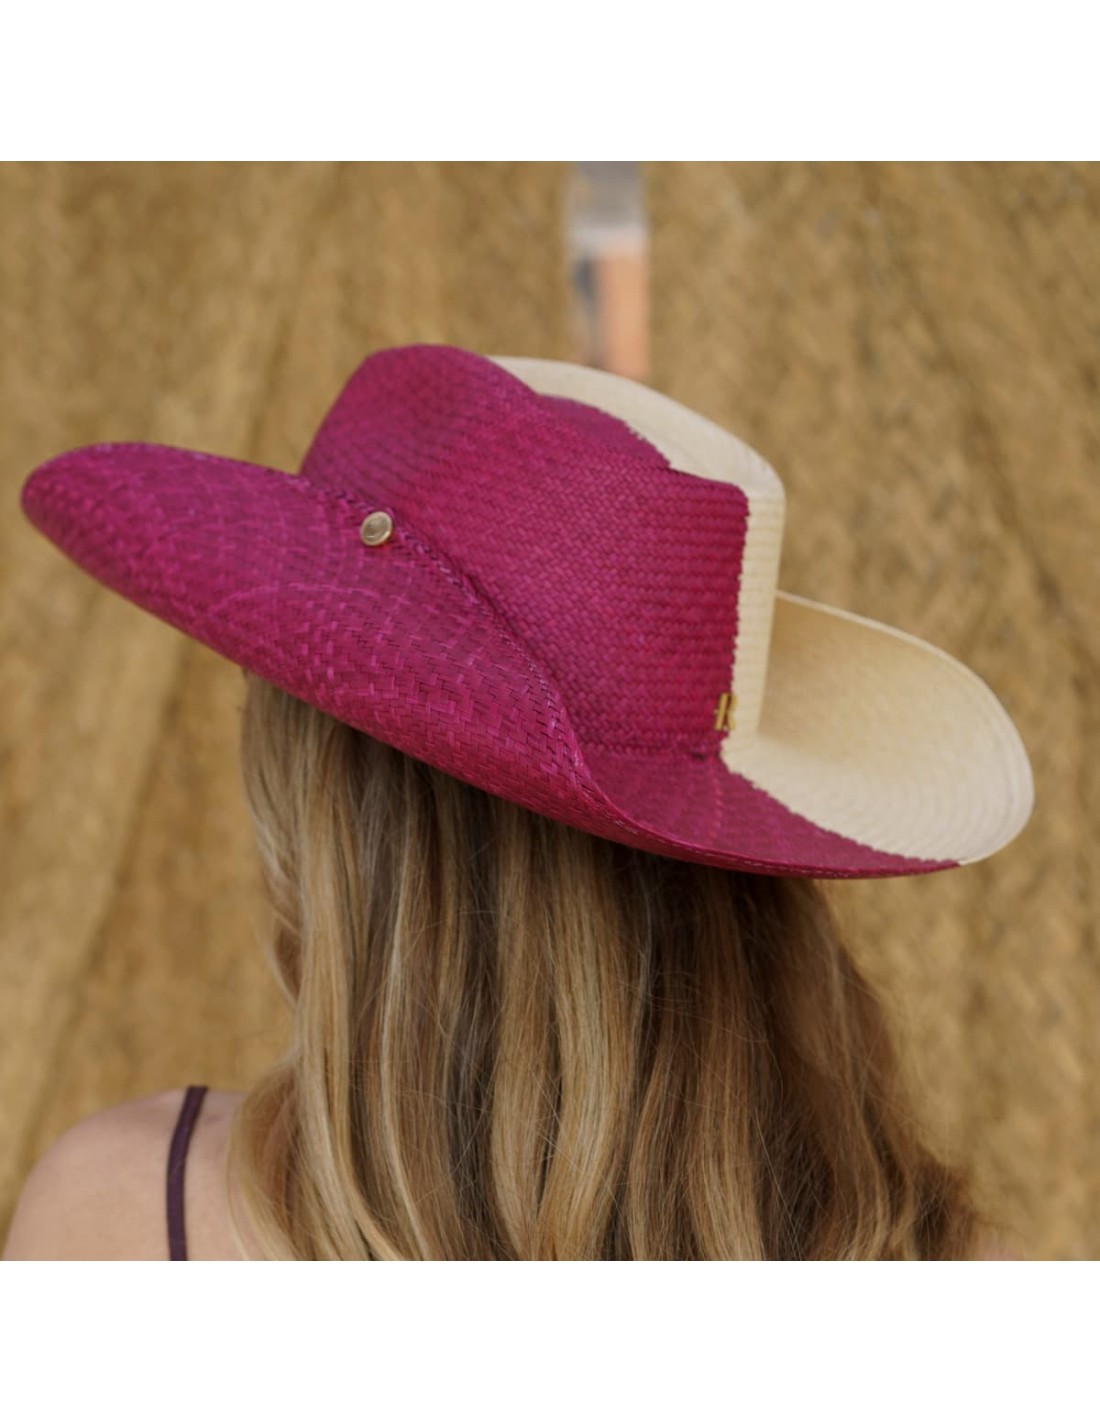 Sombrero Paja Natural Ala Ancha Rabat: Elegancia y Protección Solar - Raceu  Hats